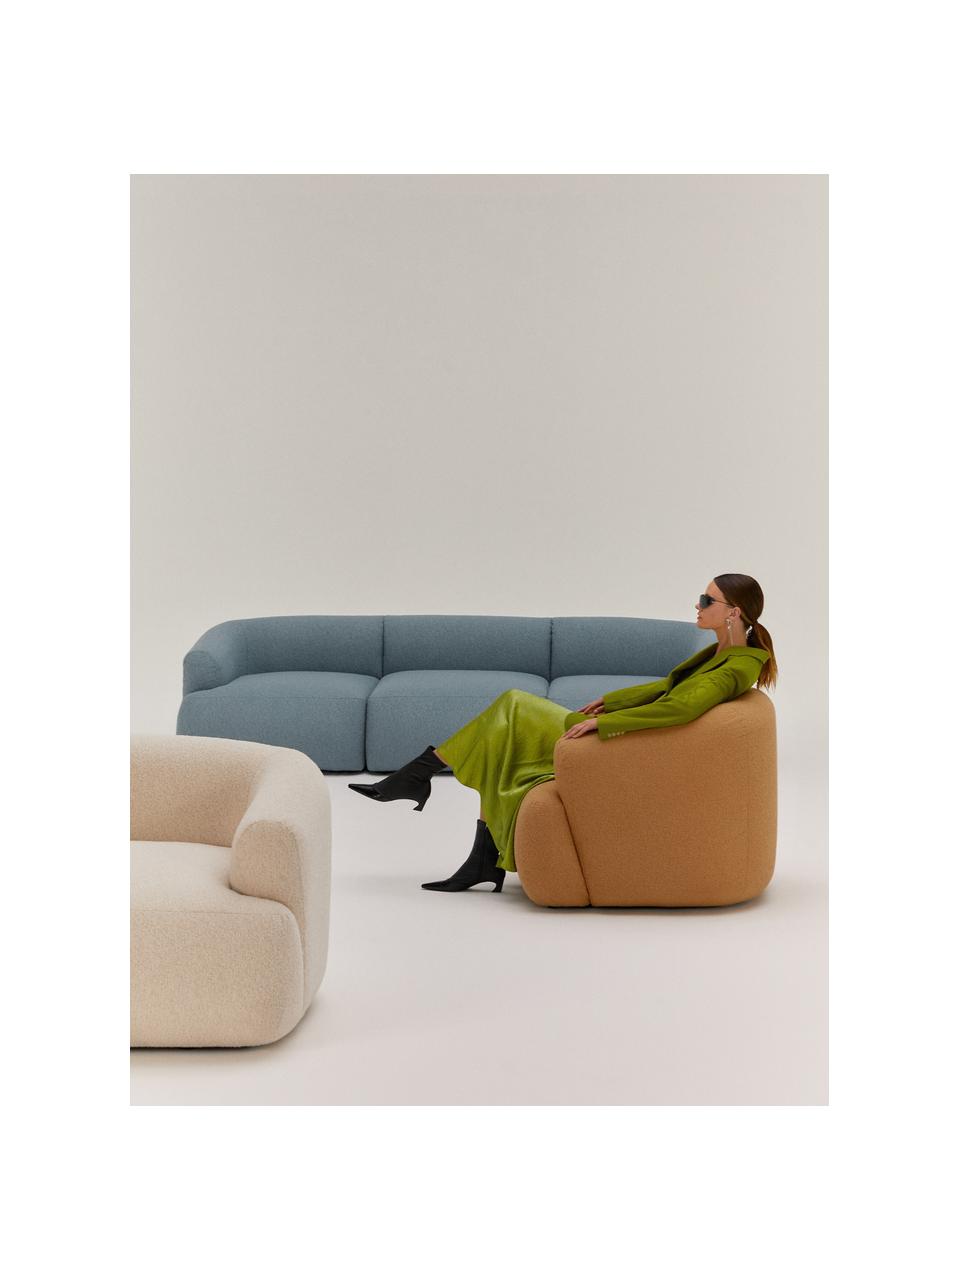 Bouclé fauteuil Sofia, Bekleding: bouclé (100% polyester) M, Frame: sparrenhout, FSC-gecertif, Poten: kunststof, Bouclé lichtbruin, B 97 x D 84 cm